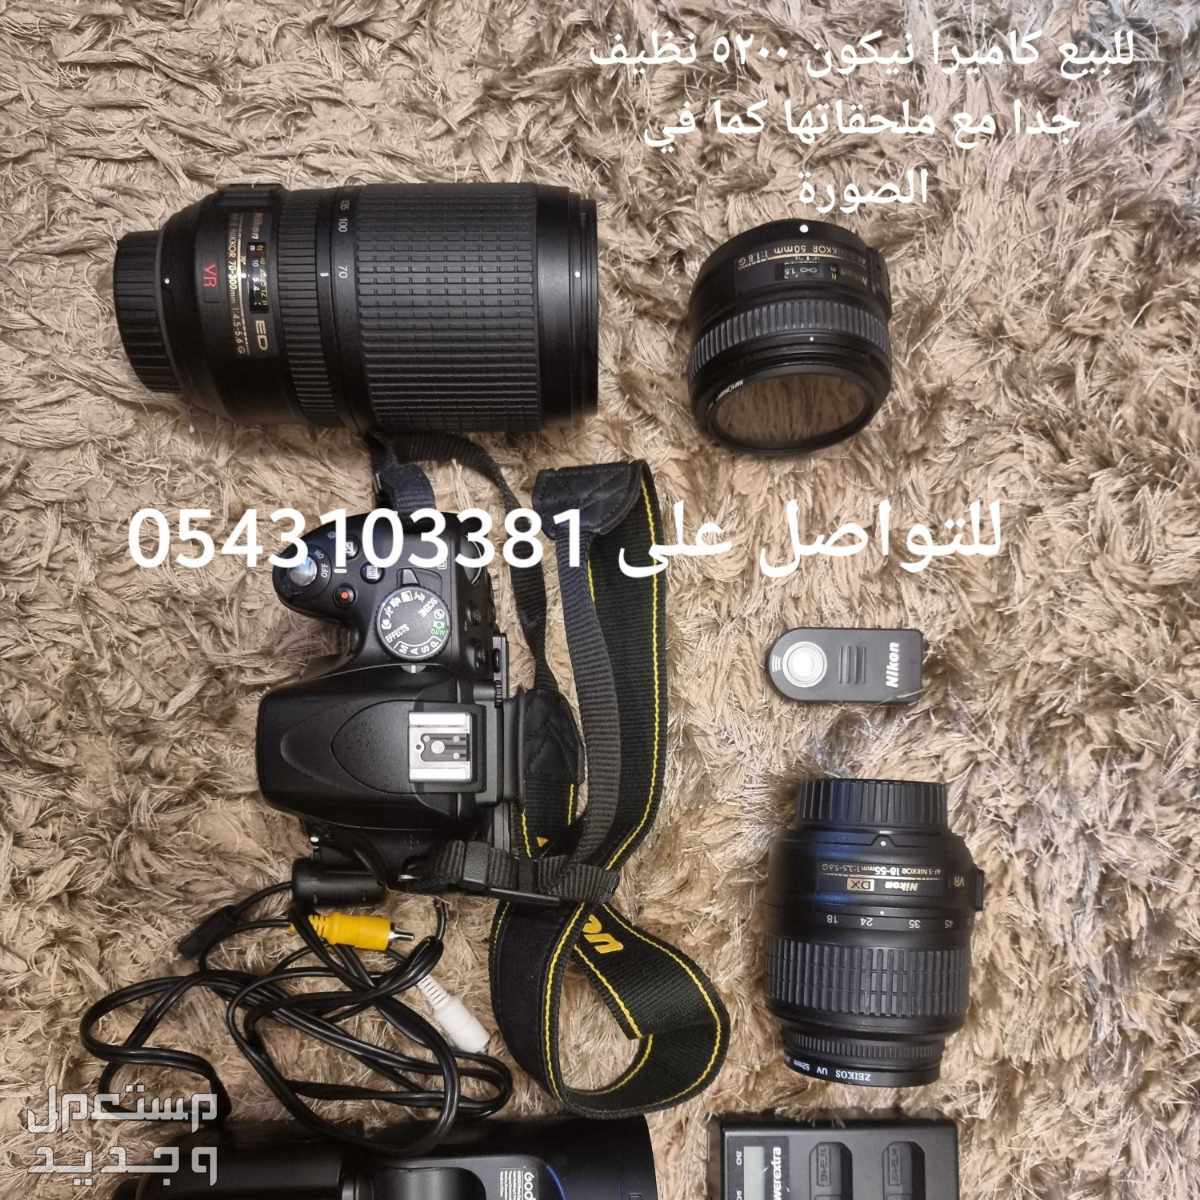 كاميرا نيكون d5200 مستعمله مع عدد 3 عدسات و فلاش godex v1 و ثلاث بطاريات للكميرا في الدمام بسعر 5500 ريال سعودي